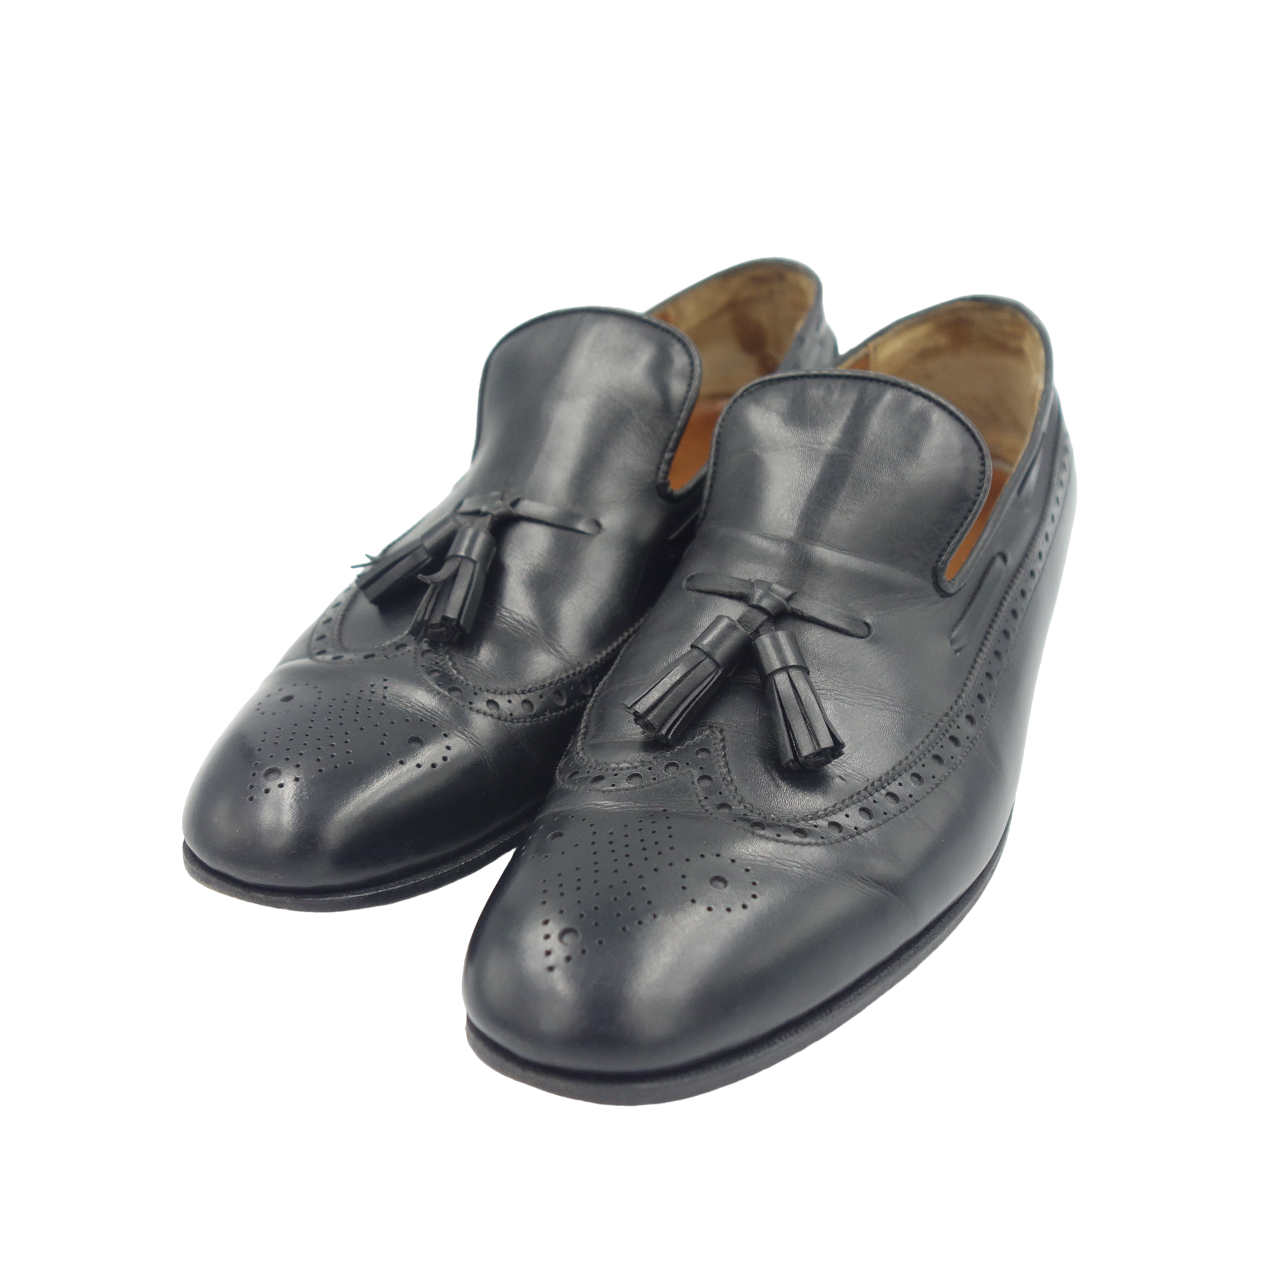 Good condition◆JM Weston leather shoes tassel loafers 181 black men's size 7C JMWESTON [LA] 